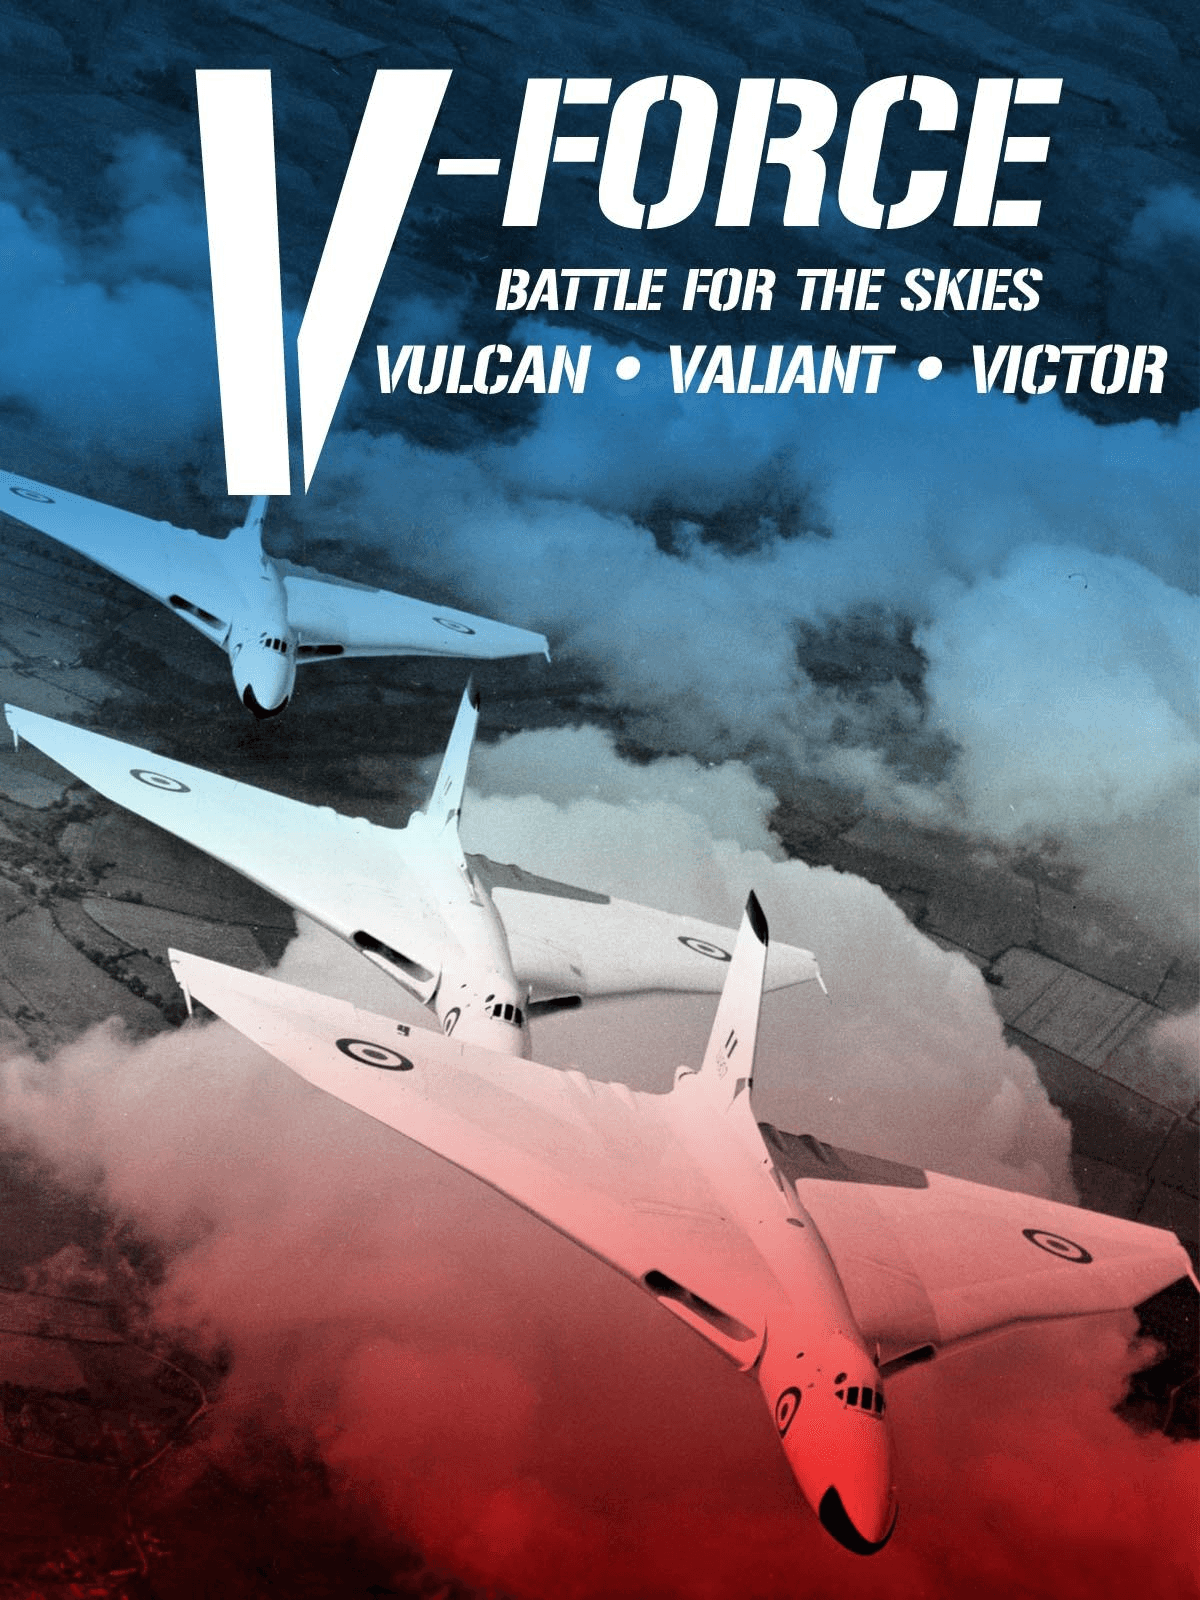 V-Force: Battle For The Skies - Vulcan, Valiant, Victor logo